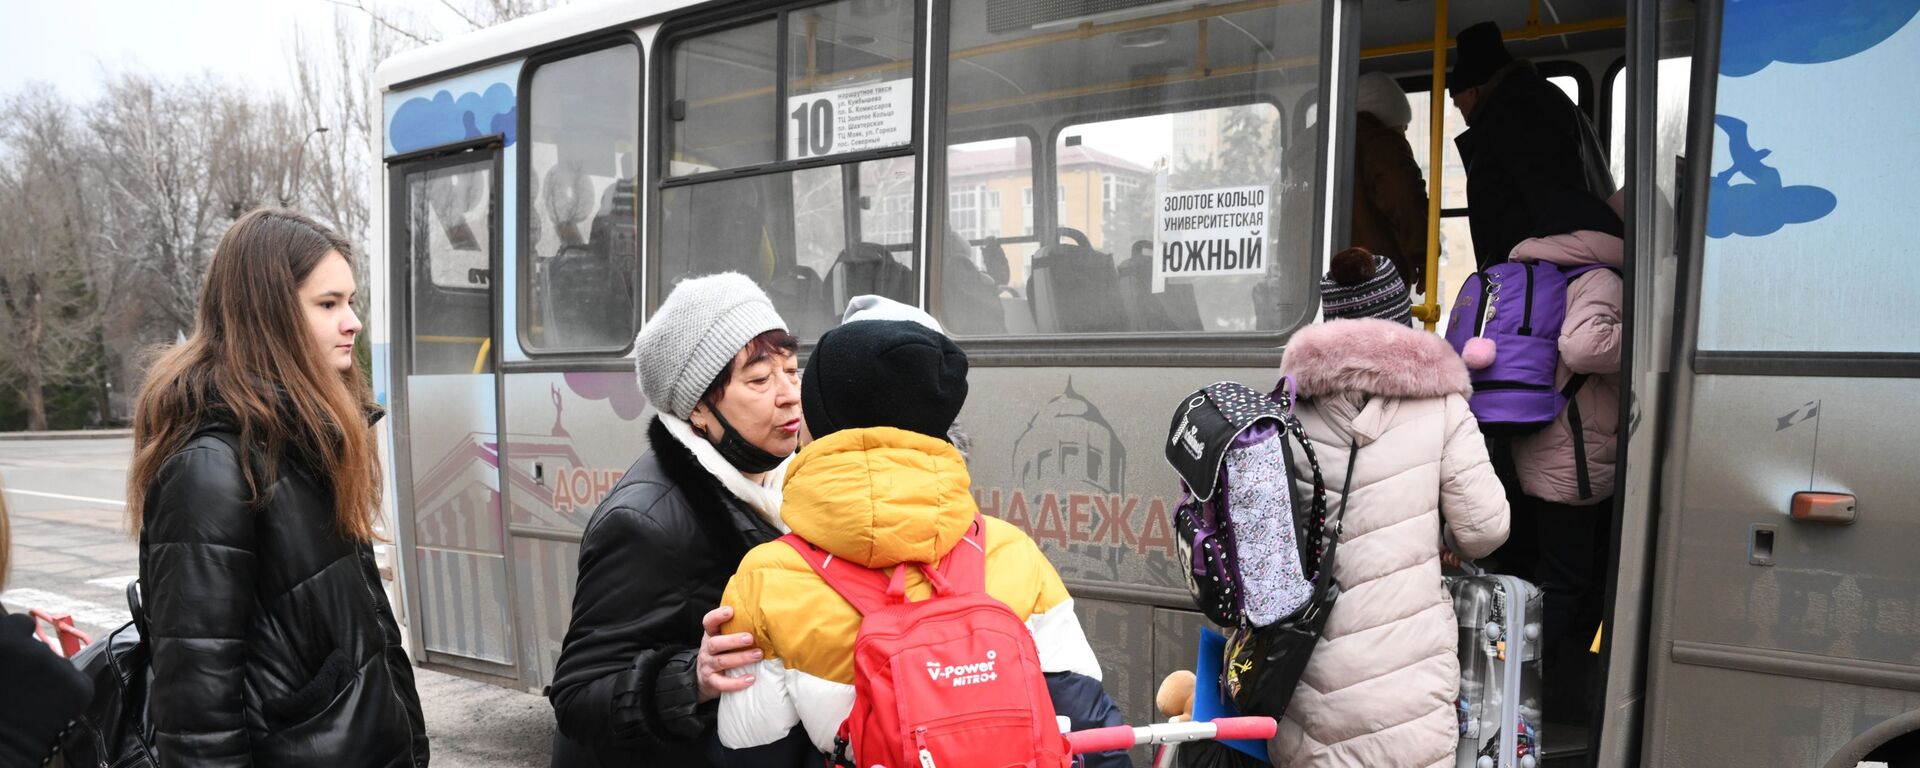 Donecko liaudies respublikos gyventojai evakuacijos į Rusijos teritoriją metu - Sputnik Lietuva, 1920, 28.02.2022